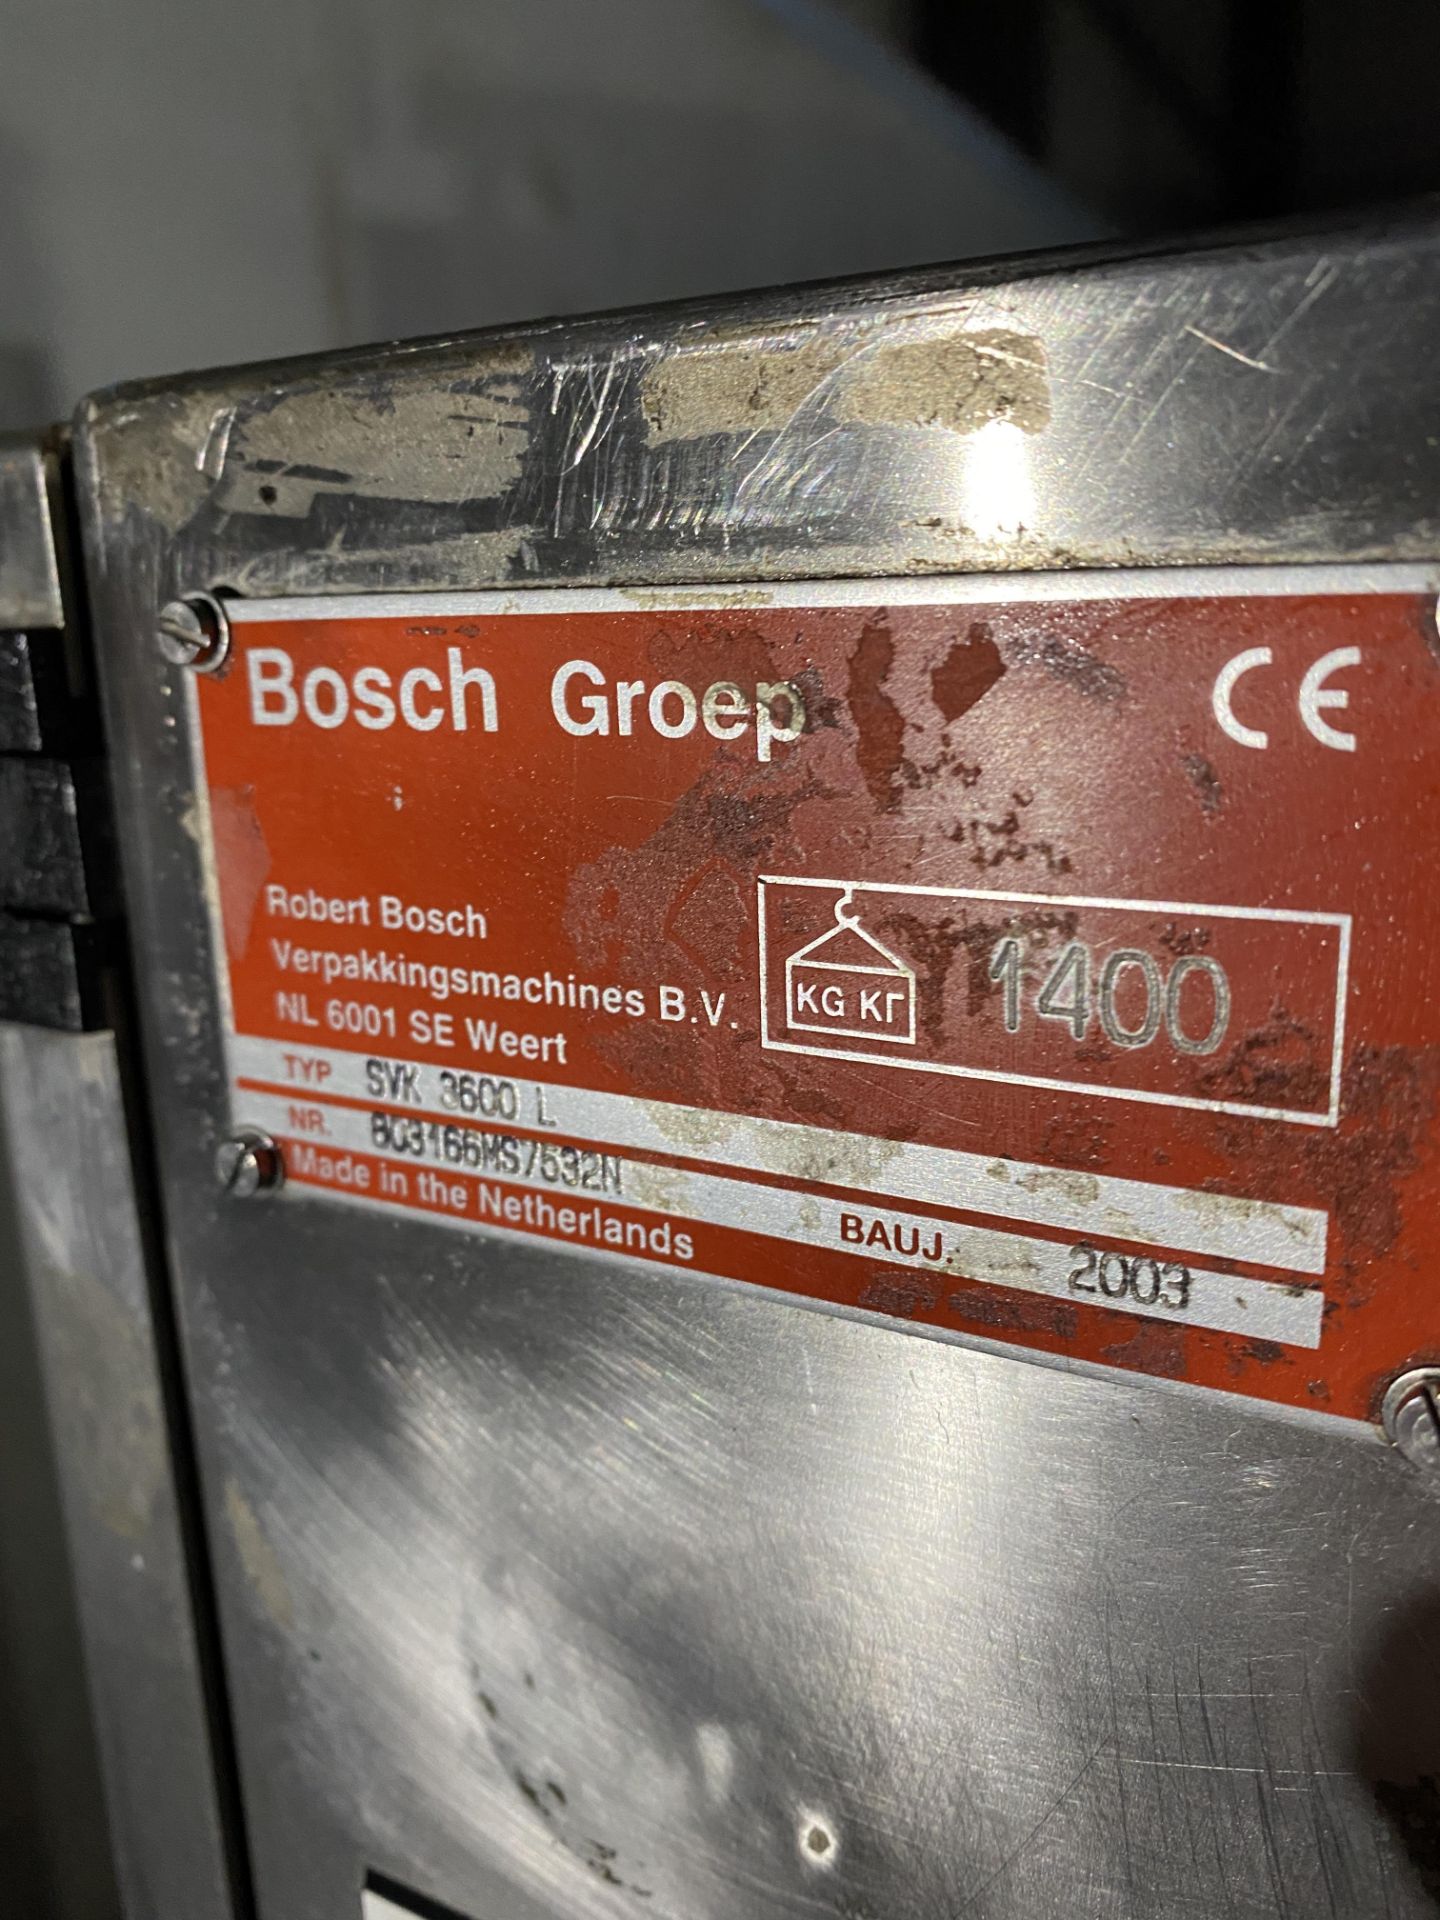 Bosch VFFS bagger - Image 3 of 4